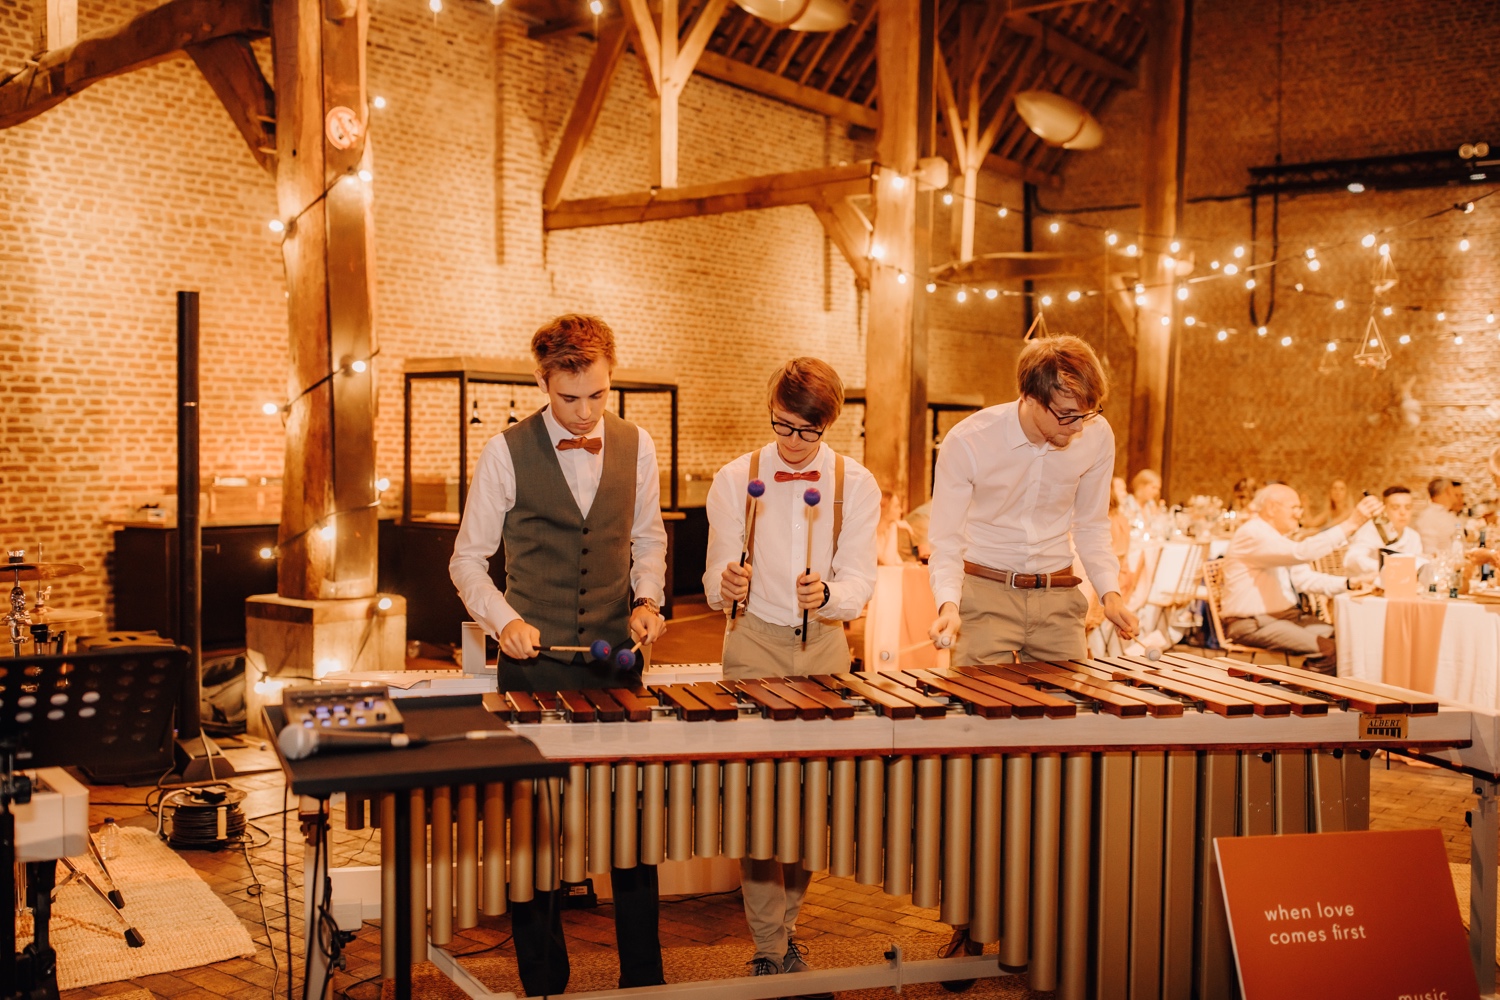 Huwelijksfotograaf Limburg - schoonbroers spelen op xylofoon tijdens avondfeest